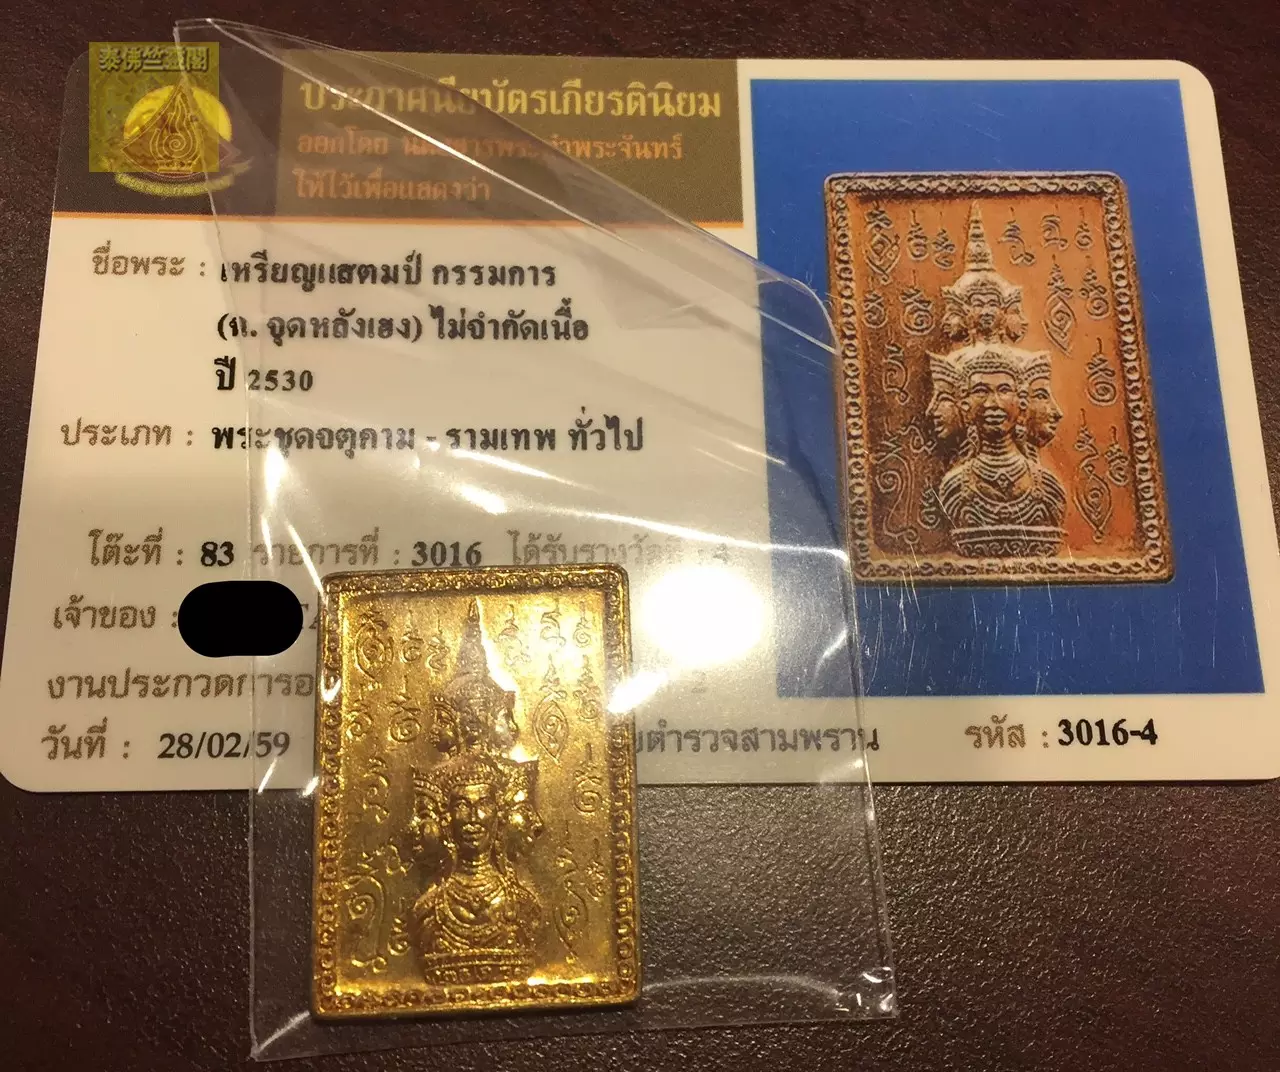 1、各类泰国牌功效详细介绍:泰国牌贵吗？